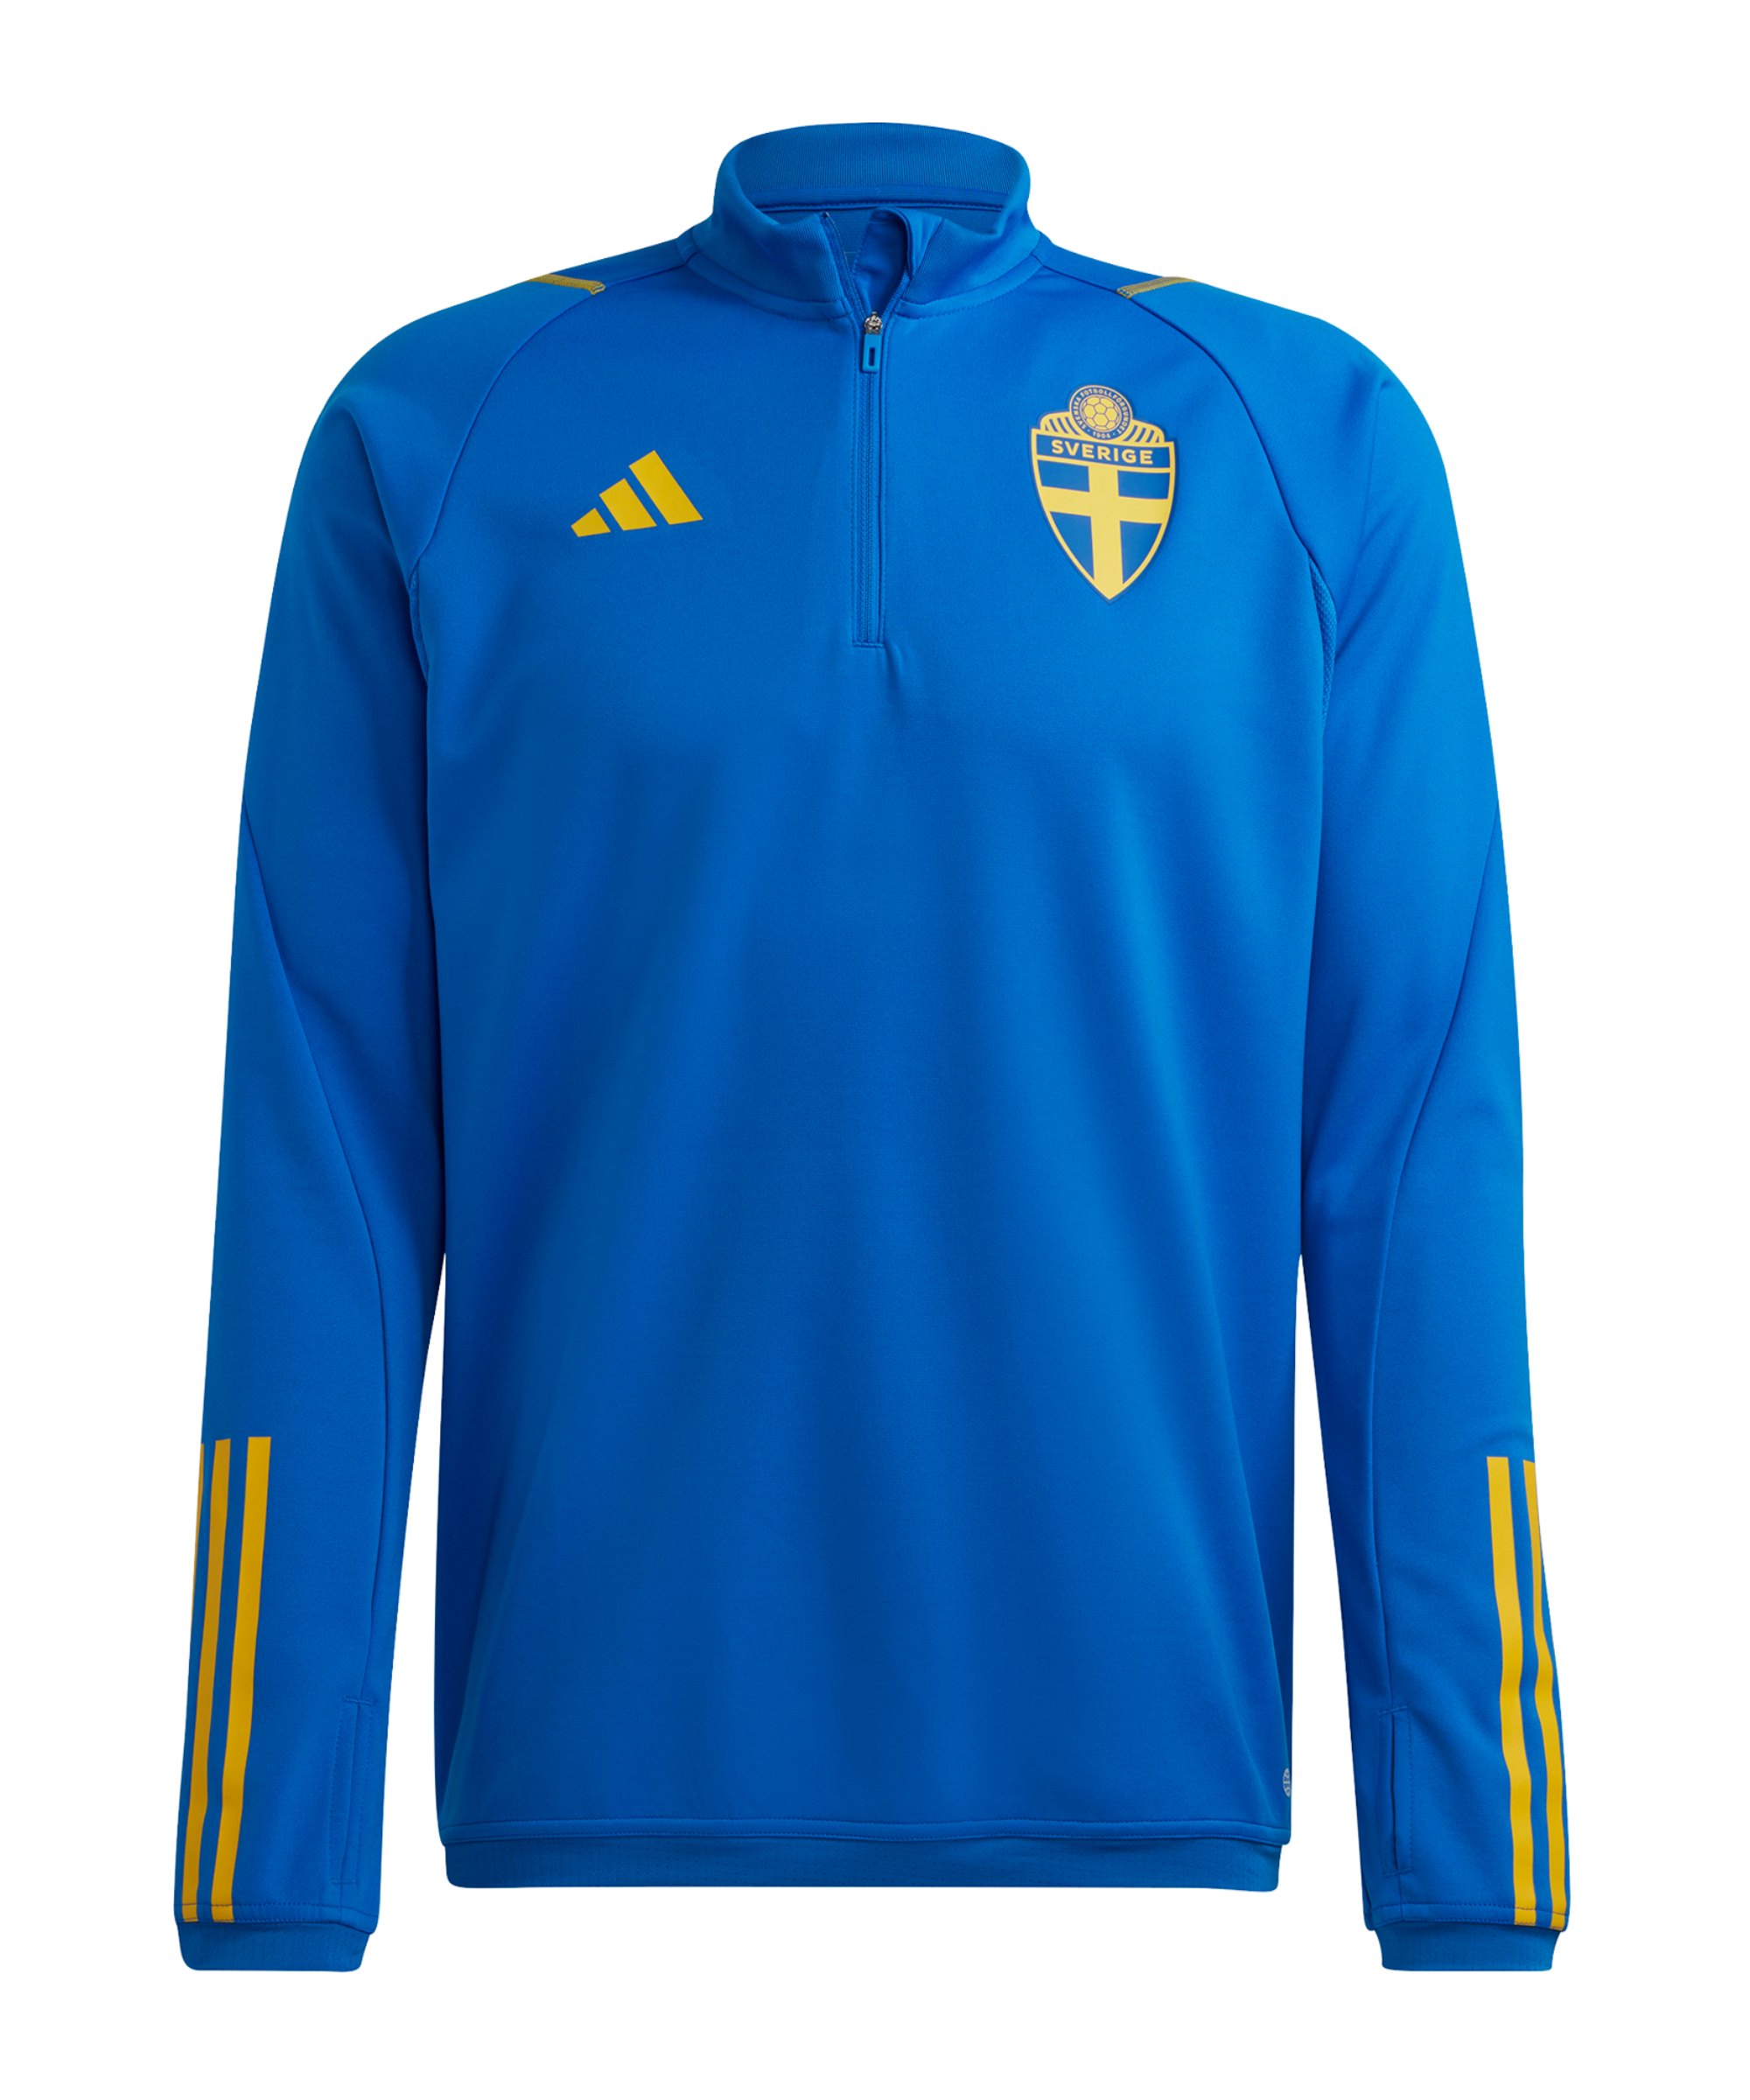 adidas Schweden Tracktop Sweatshirt Blau Gelb - blau